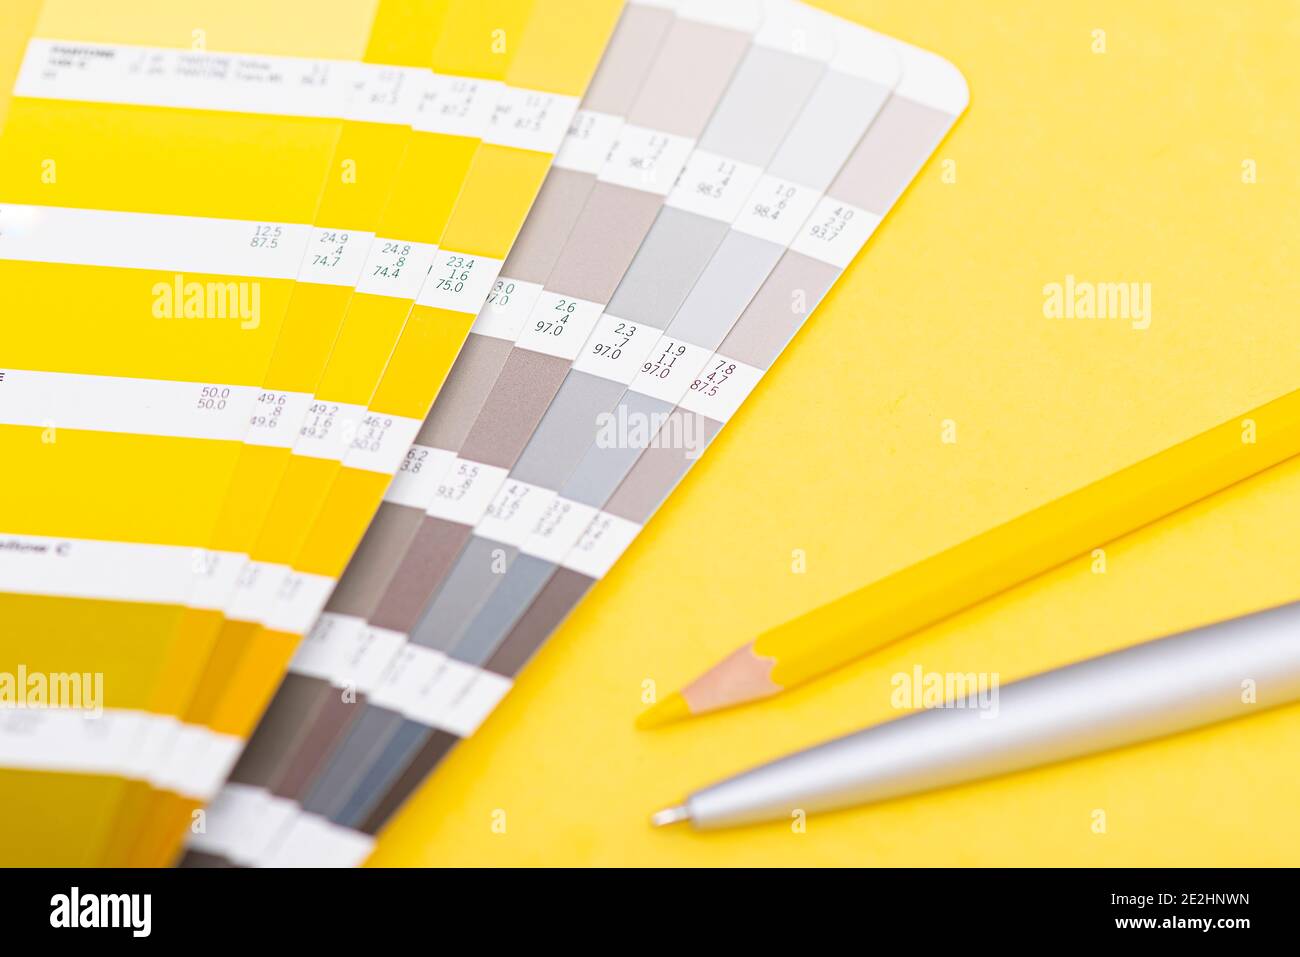 Farbpalette mit Farbe des Jahres 2021 - leuchtendes Gelb und neutrales Grau, Layout, Farbschablone Stockfoto